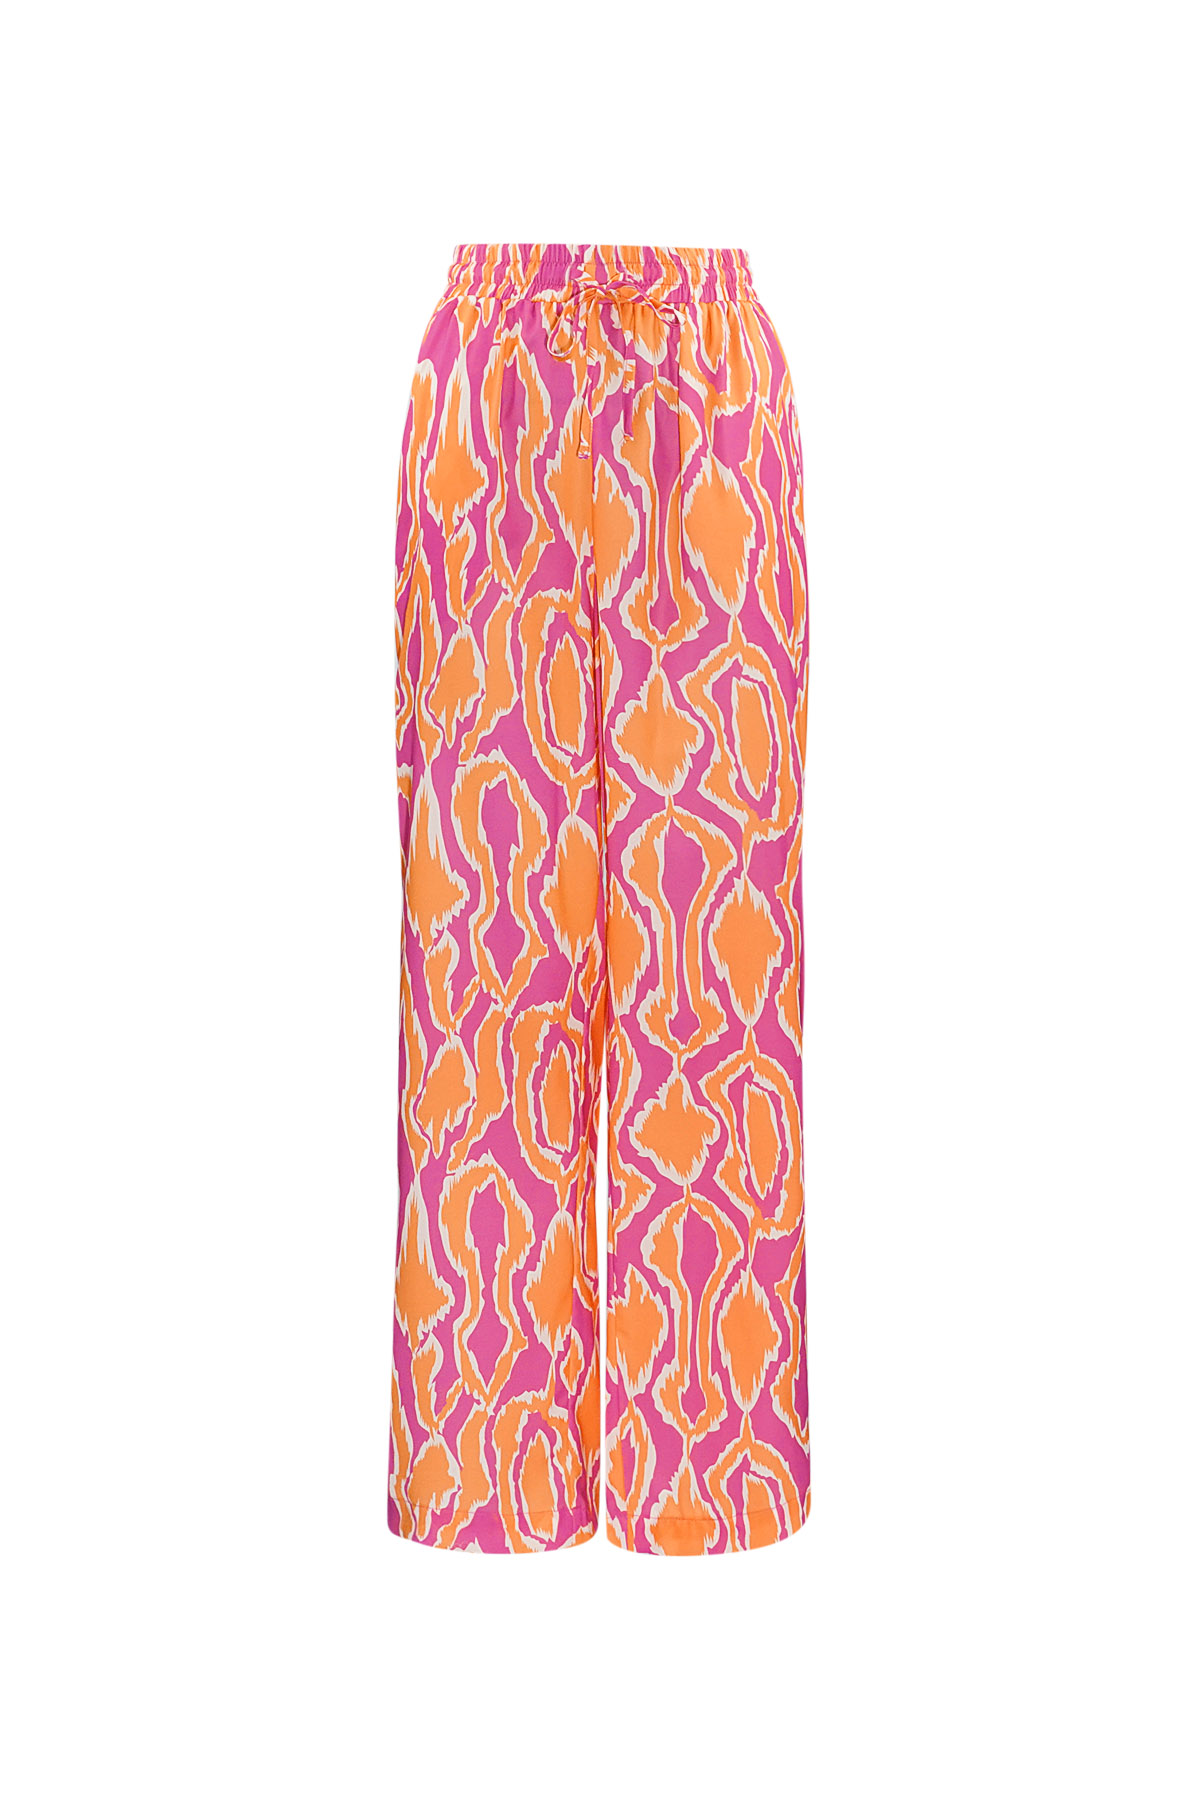 Bunte Hose mit Aufdruck - Orange/Pink 